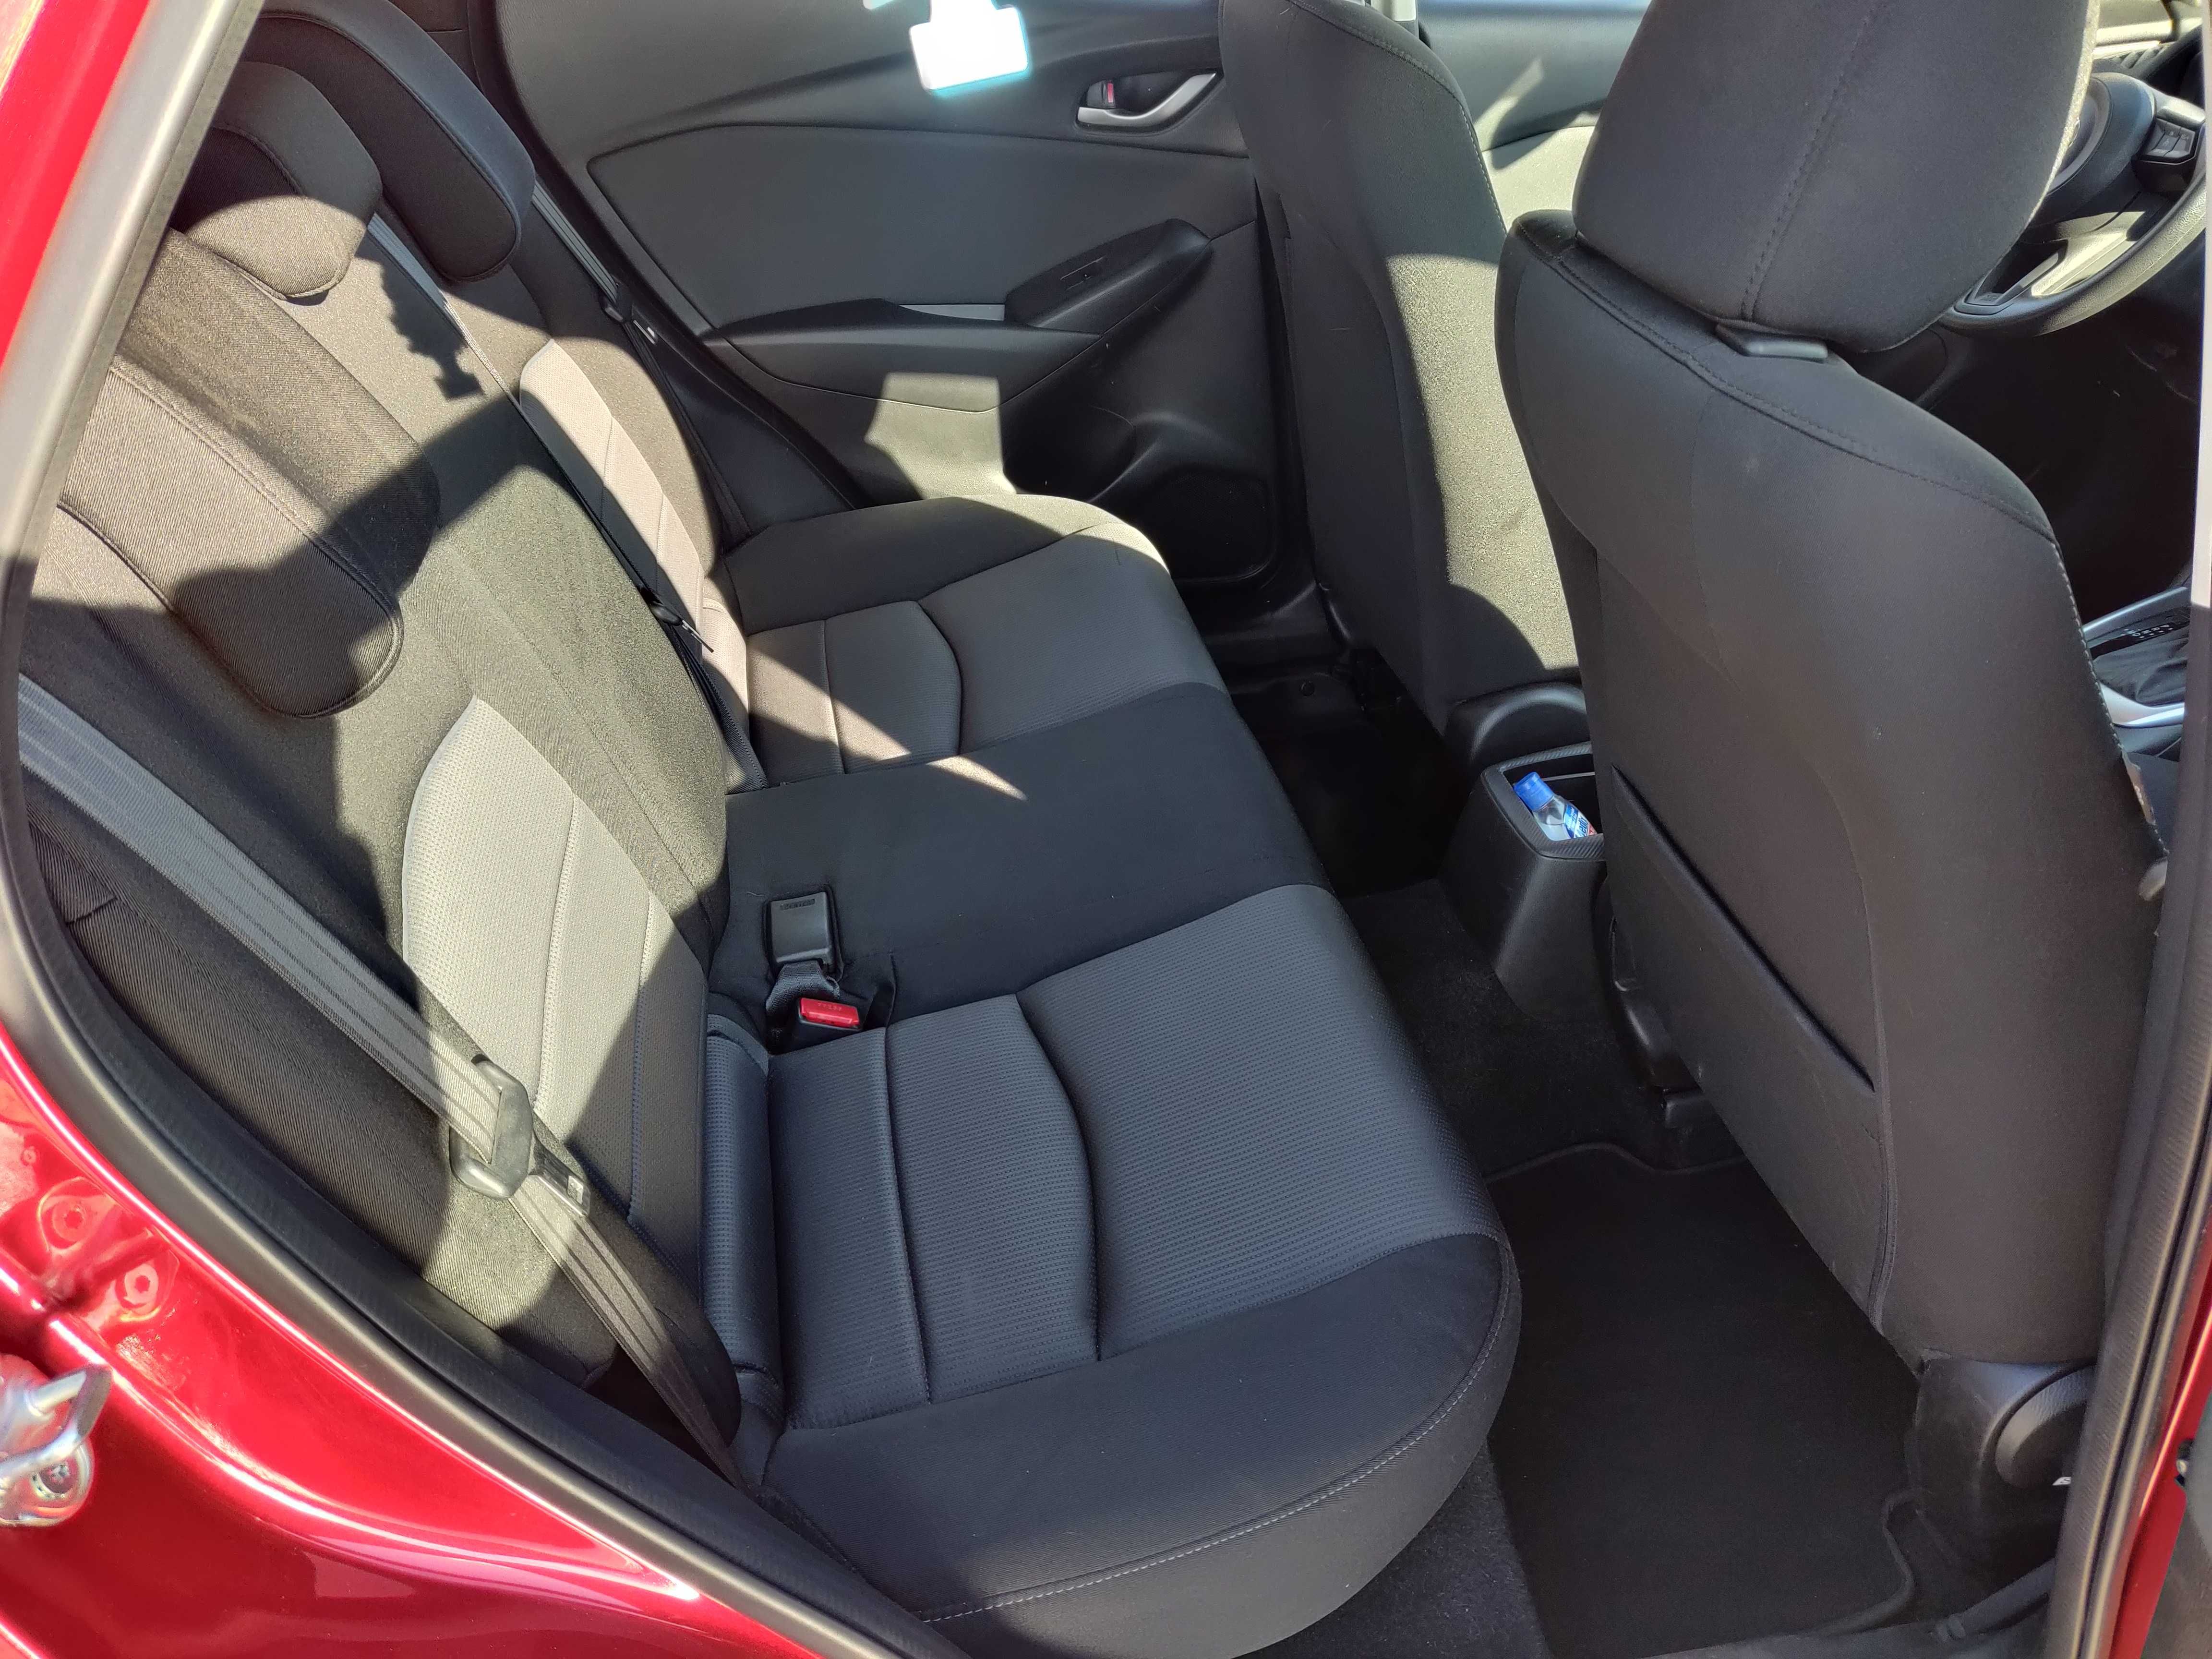 2018 Mazda СХ-3 AWD 4x4 Sport като нова, обслужена, реални километри